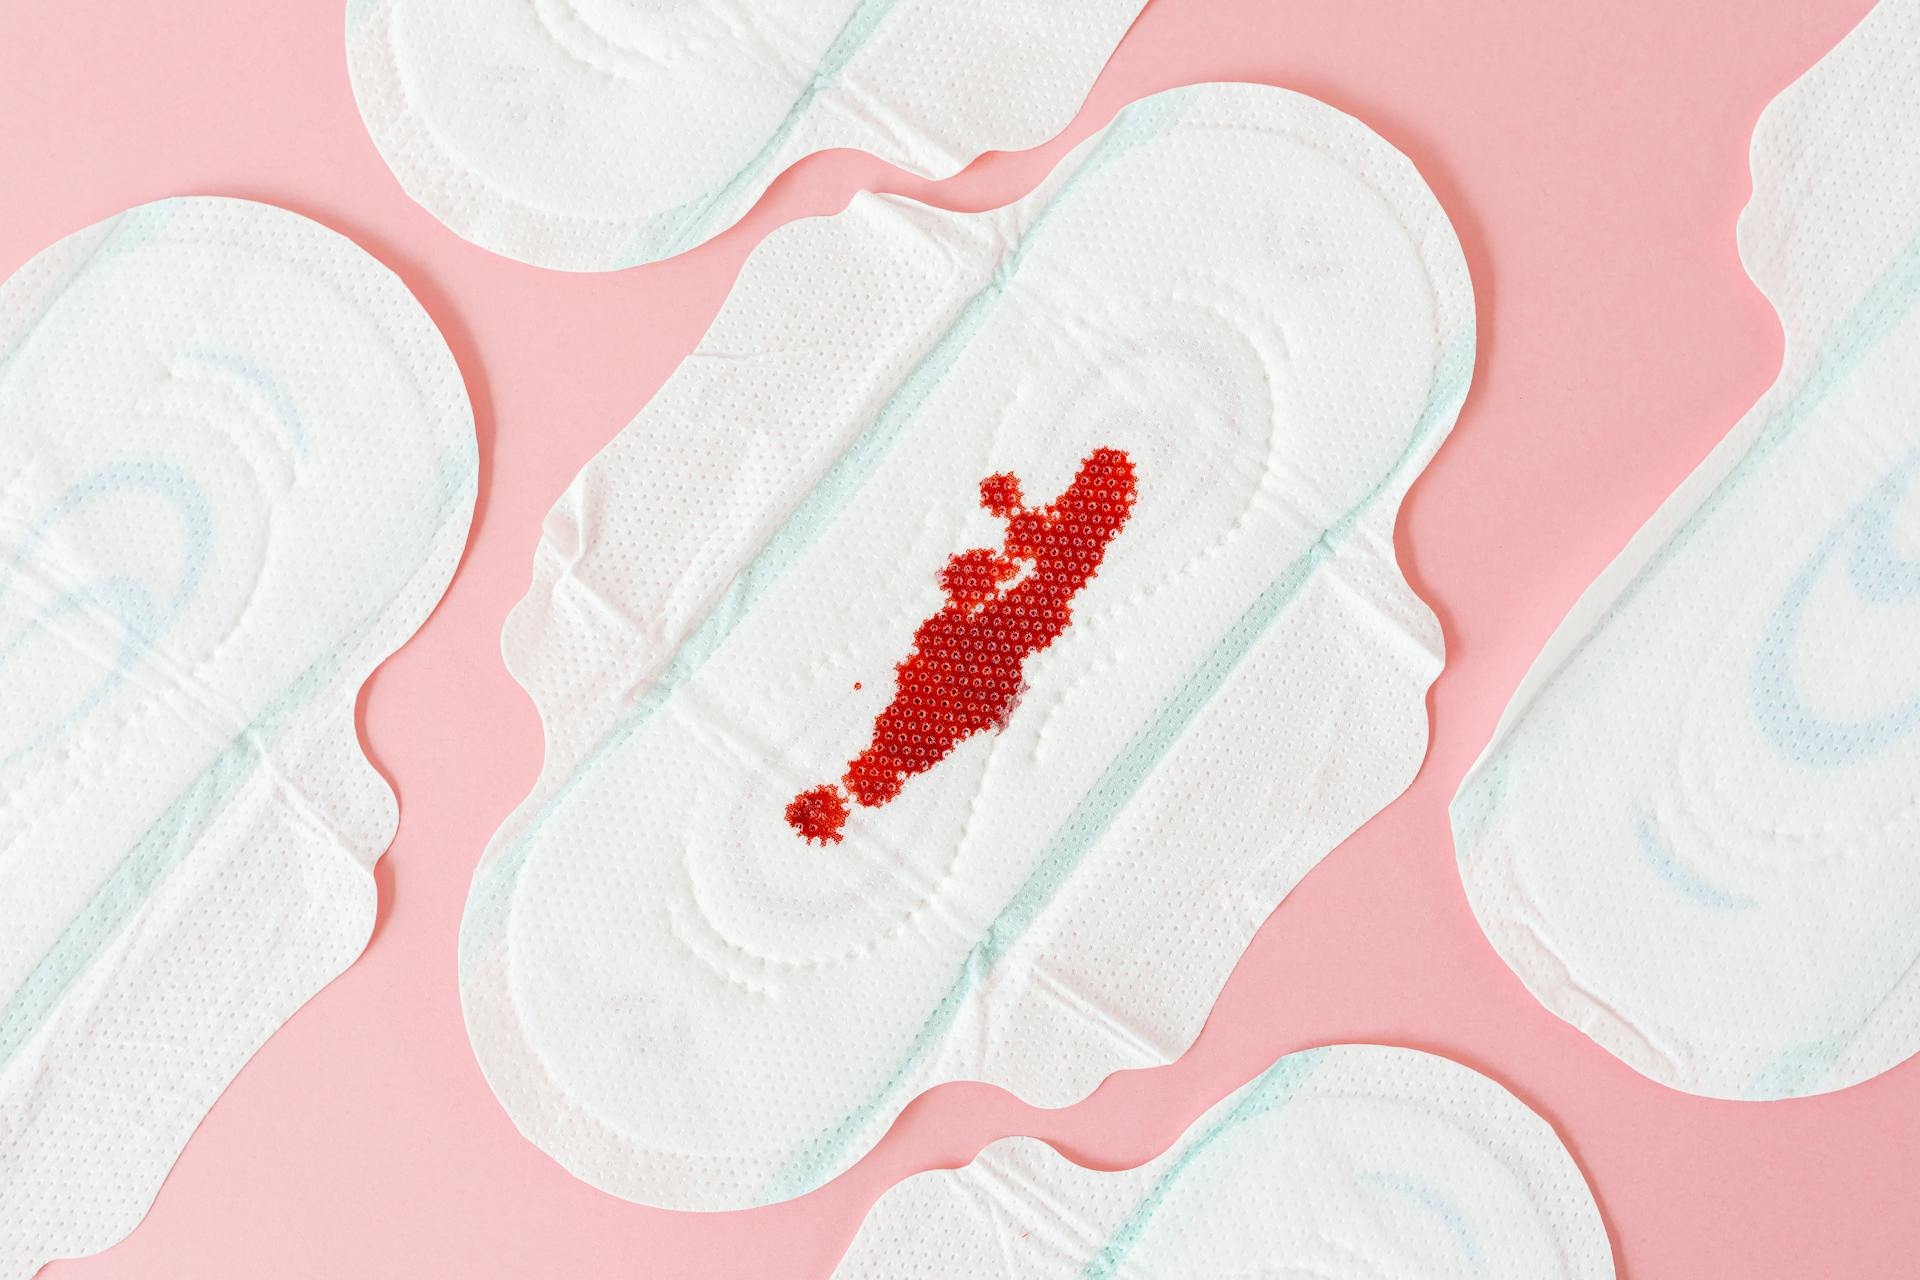 Afbeelding van Moet menstruatieverlof verplicht worden?